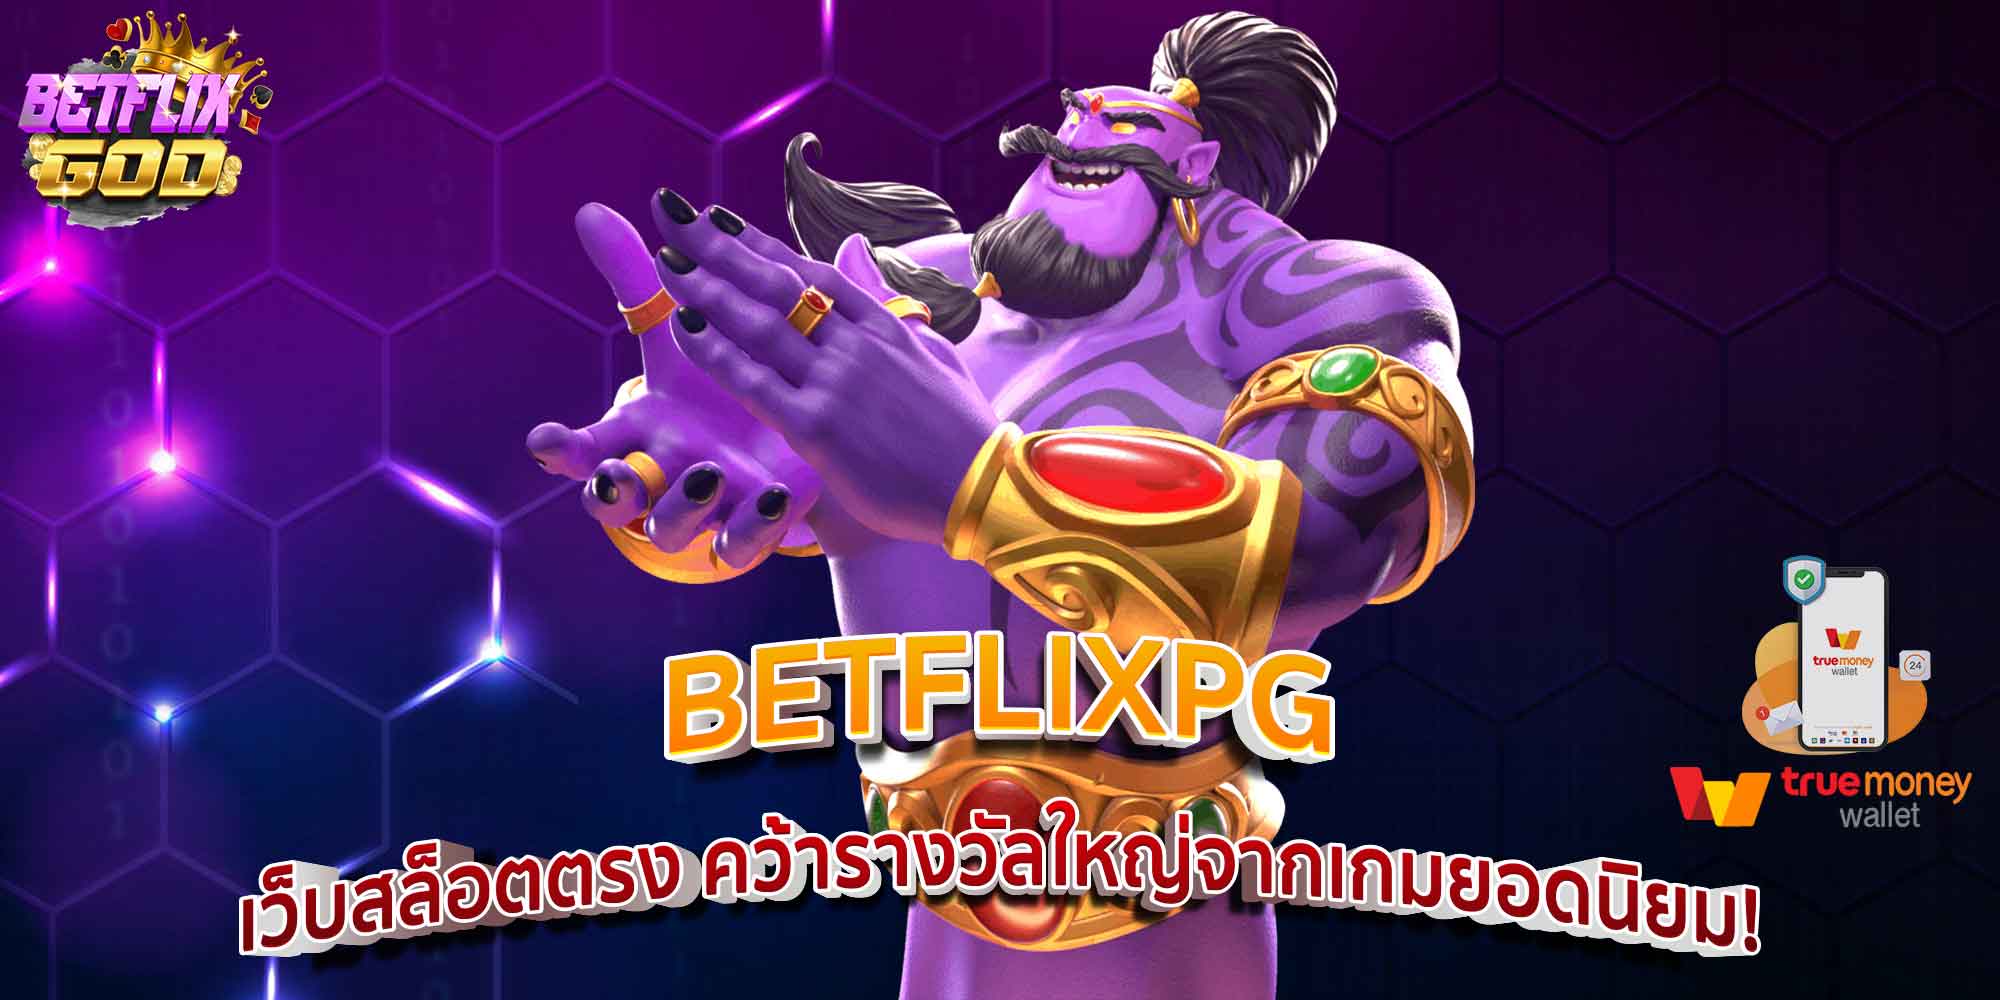 BETFLIXPG เว็บสล็อตตรง คว้ารางวัลใหญ่จากเกมยอดนิยม!